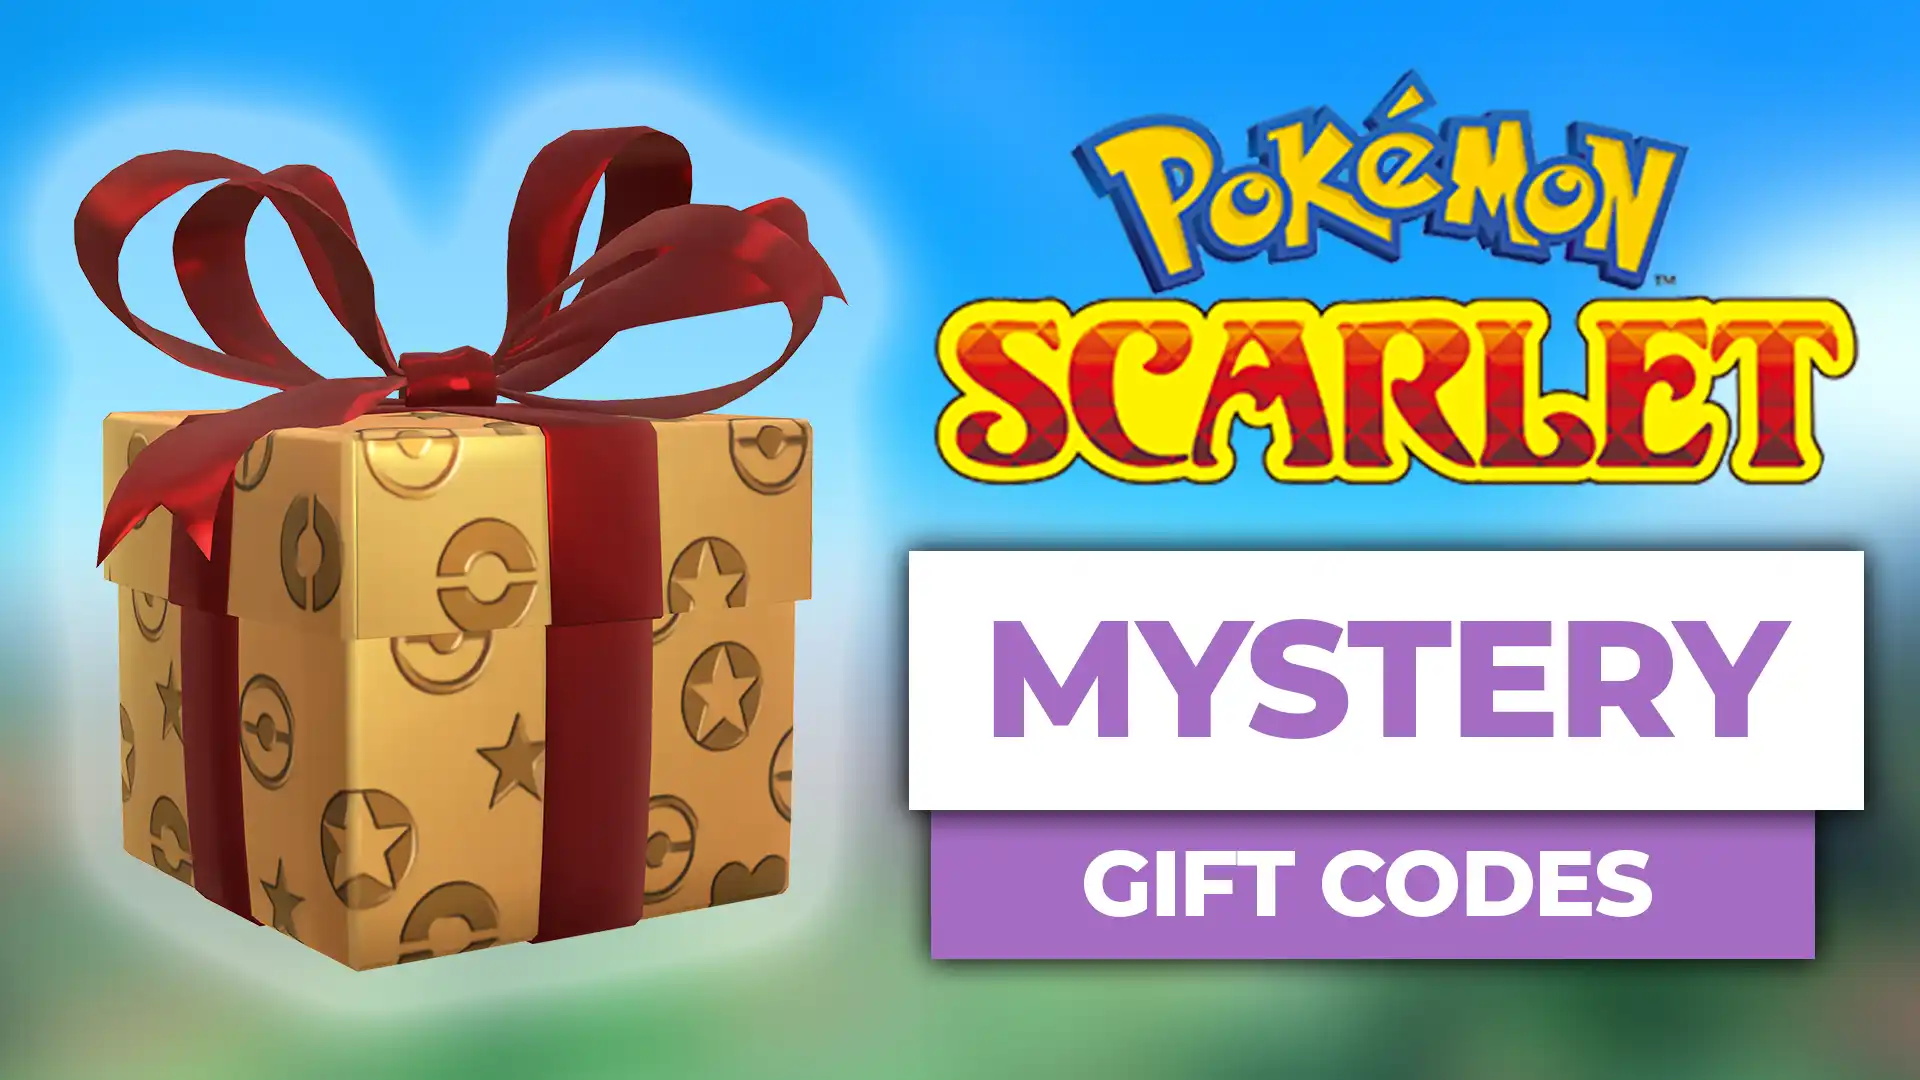 Pokemon Scarlet And Violet Mystery Gift Codes November My XXX Hot Girl